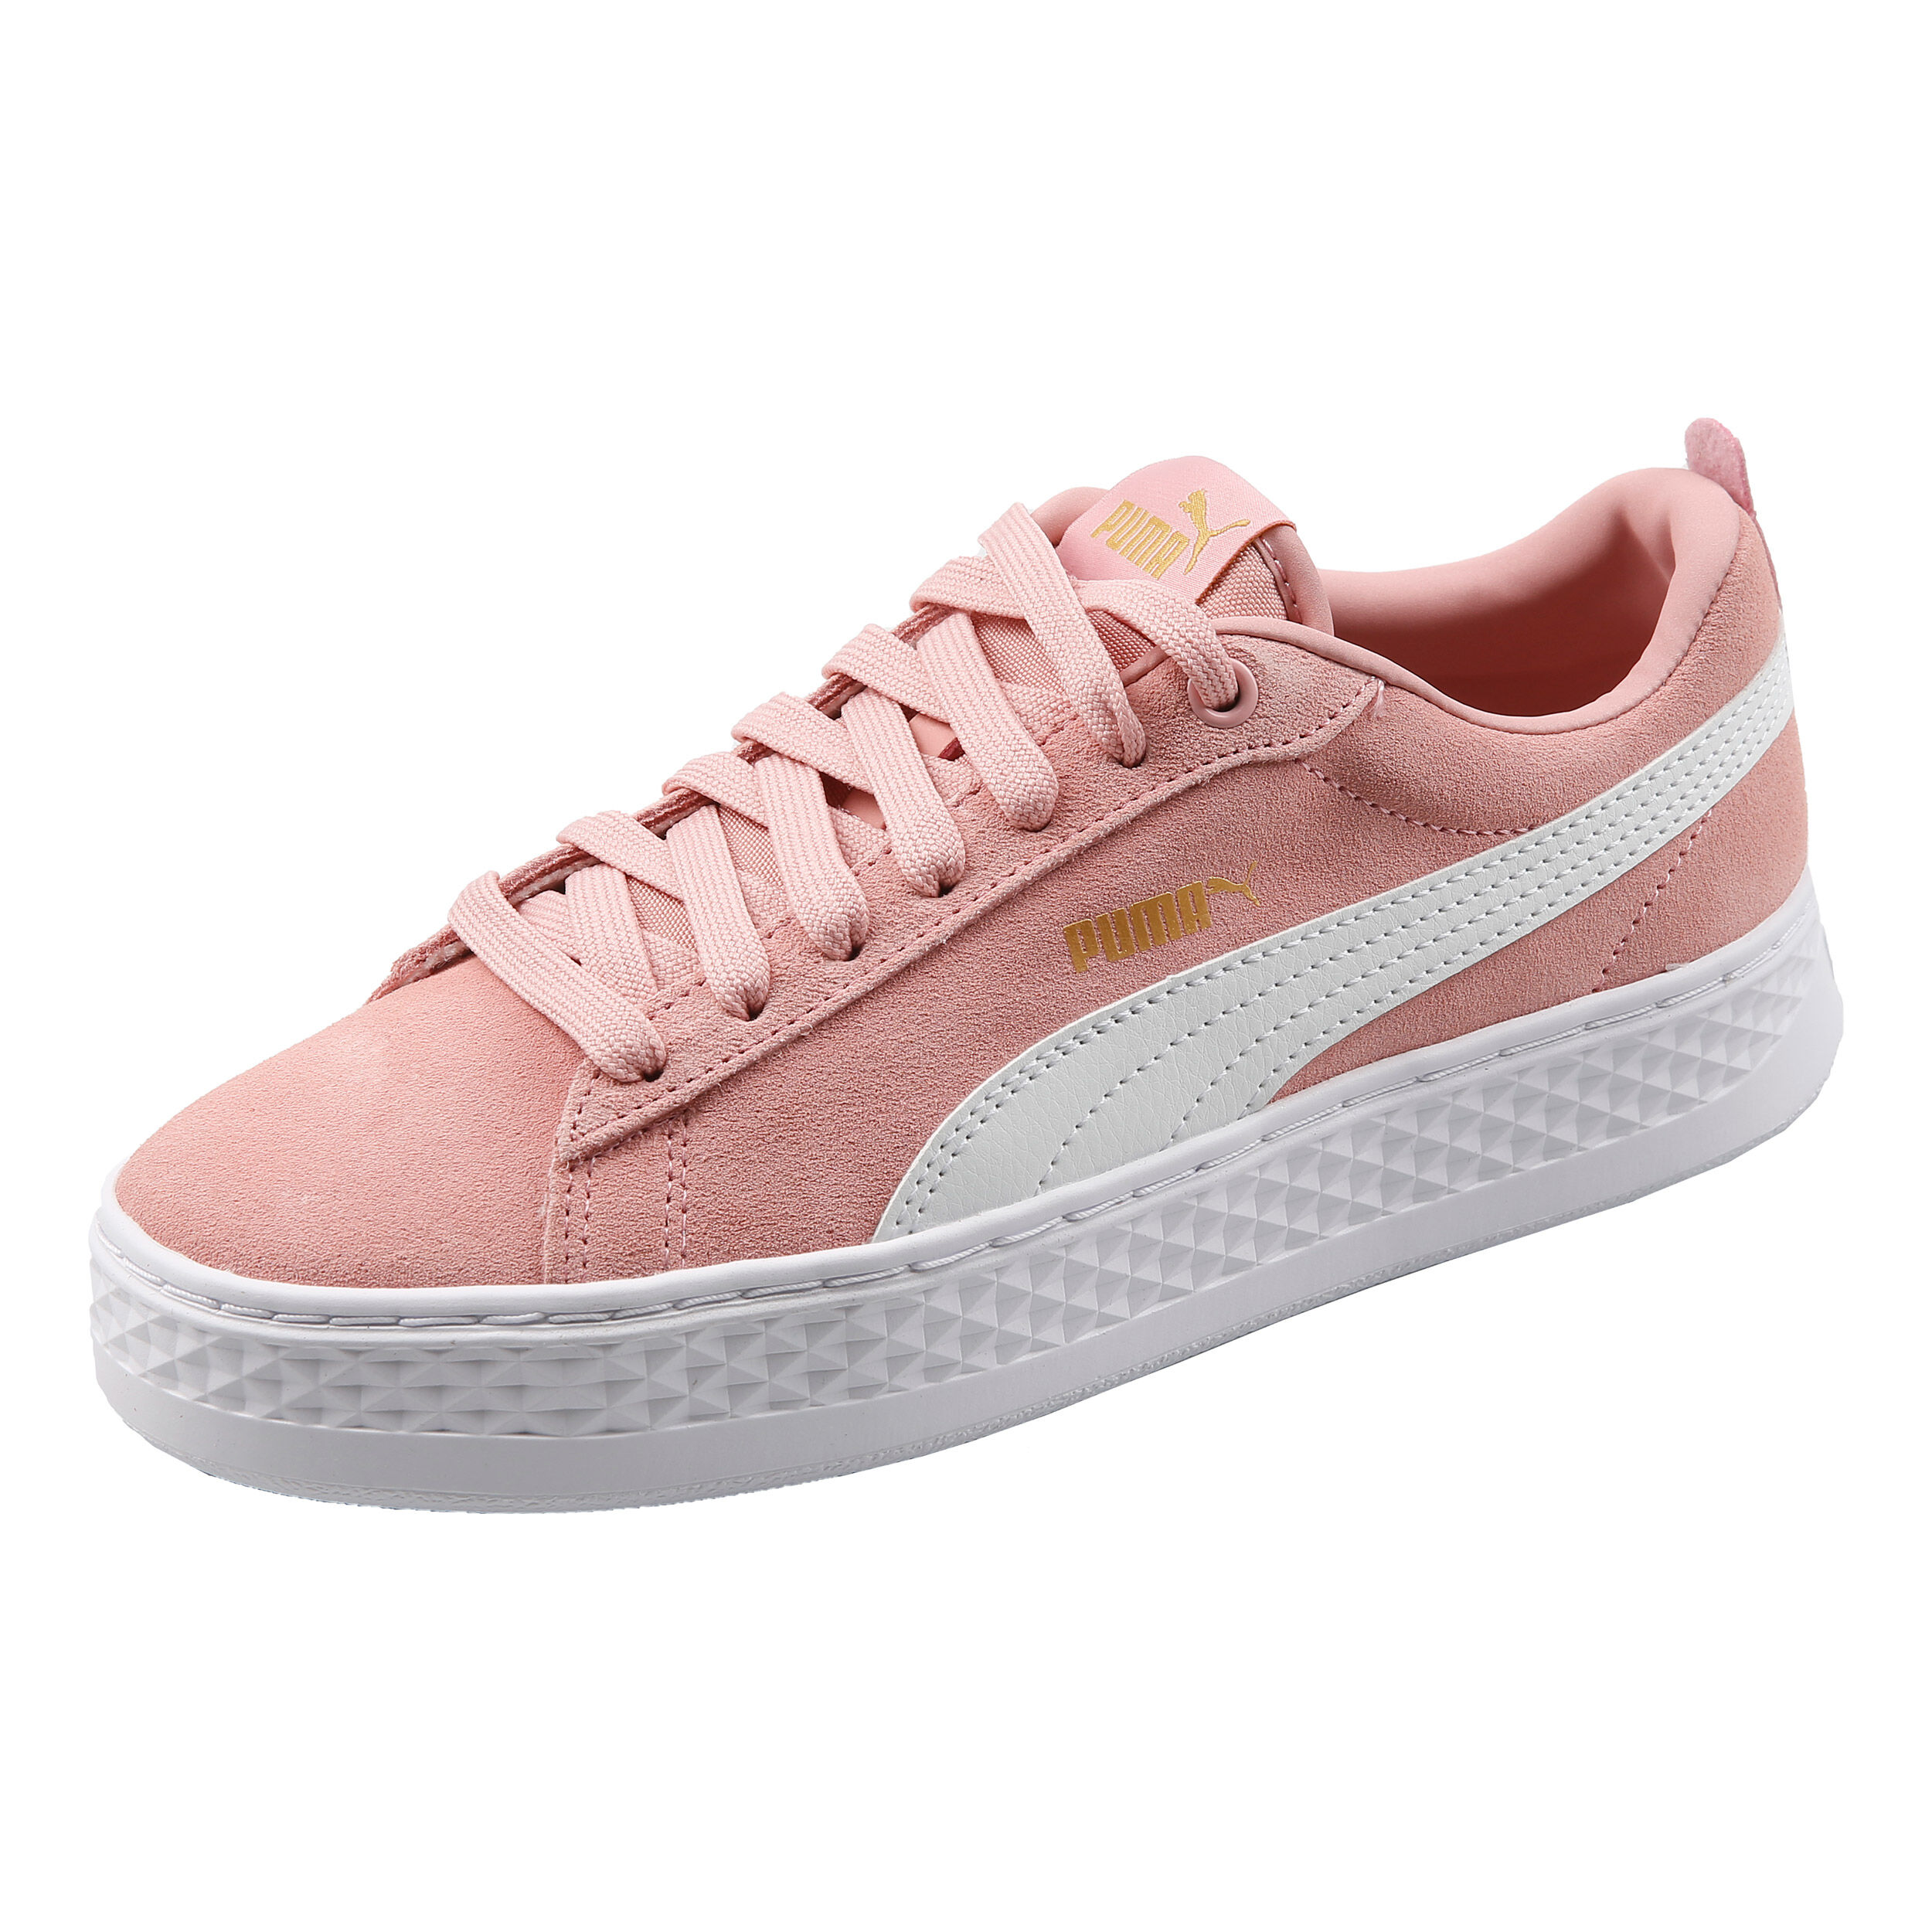 Puma Smash Platform SD Sneaker Damen - Rosa, Weiß online kaufen |  Tennis-Point